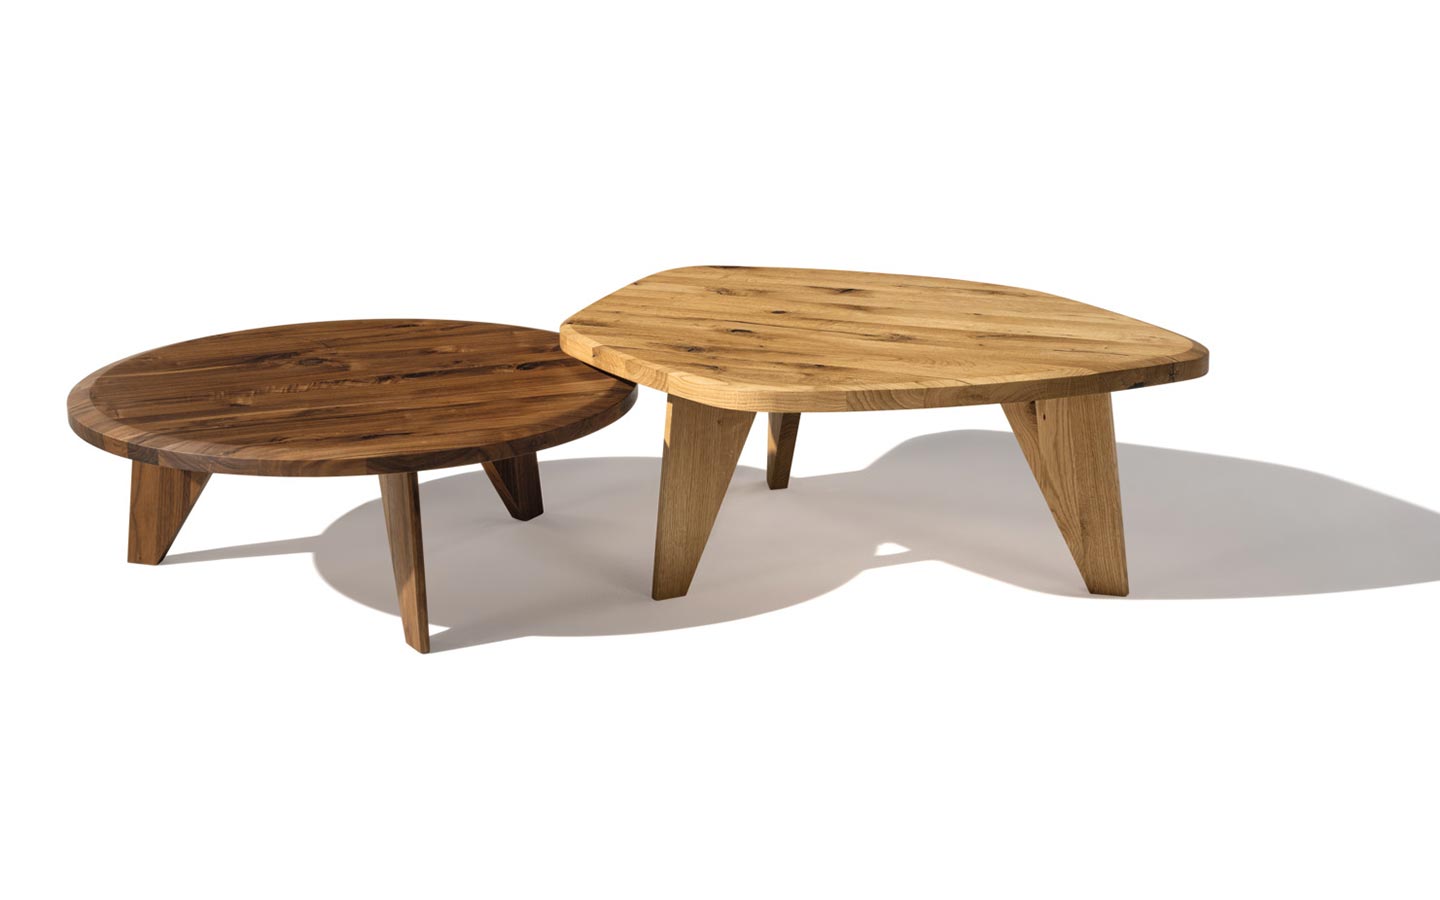 Complementi d’arredo TEAM 7, la natura dentro casa con il tavolino in legno massello